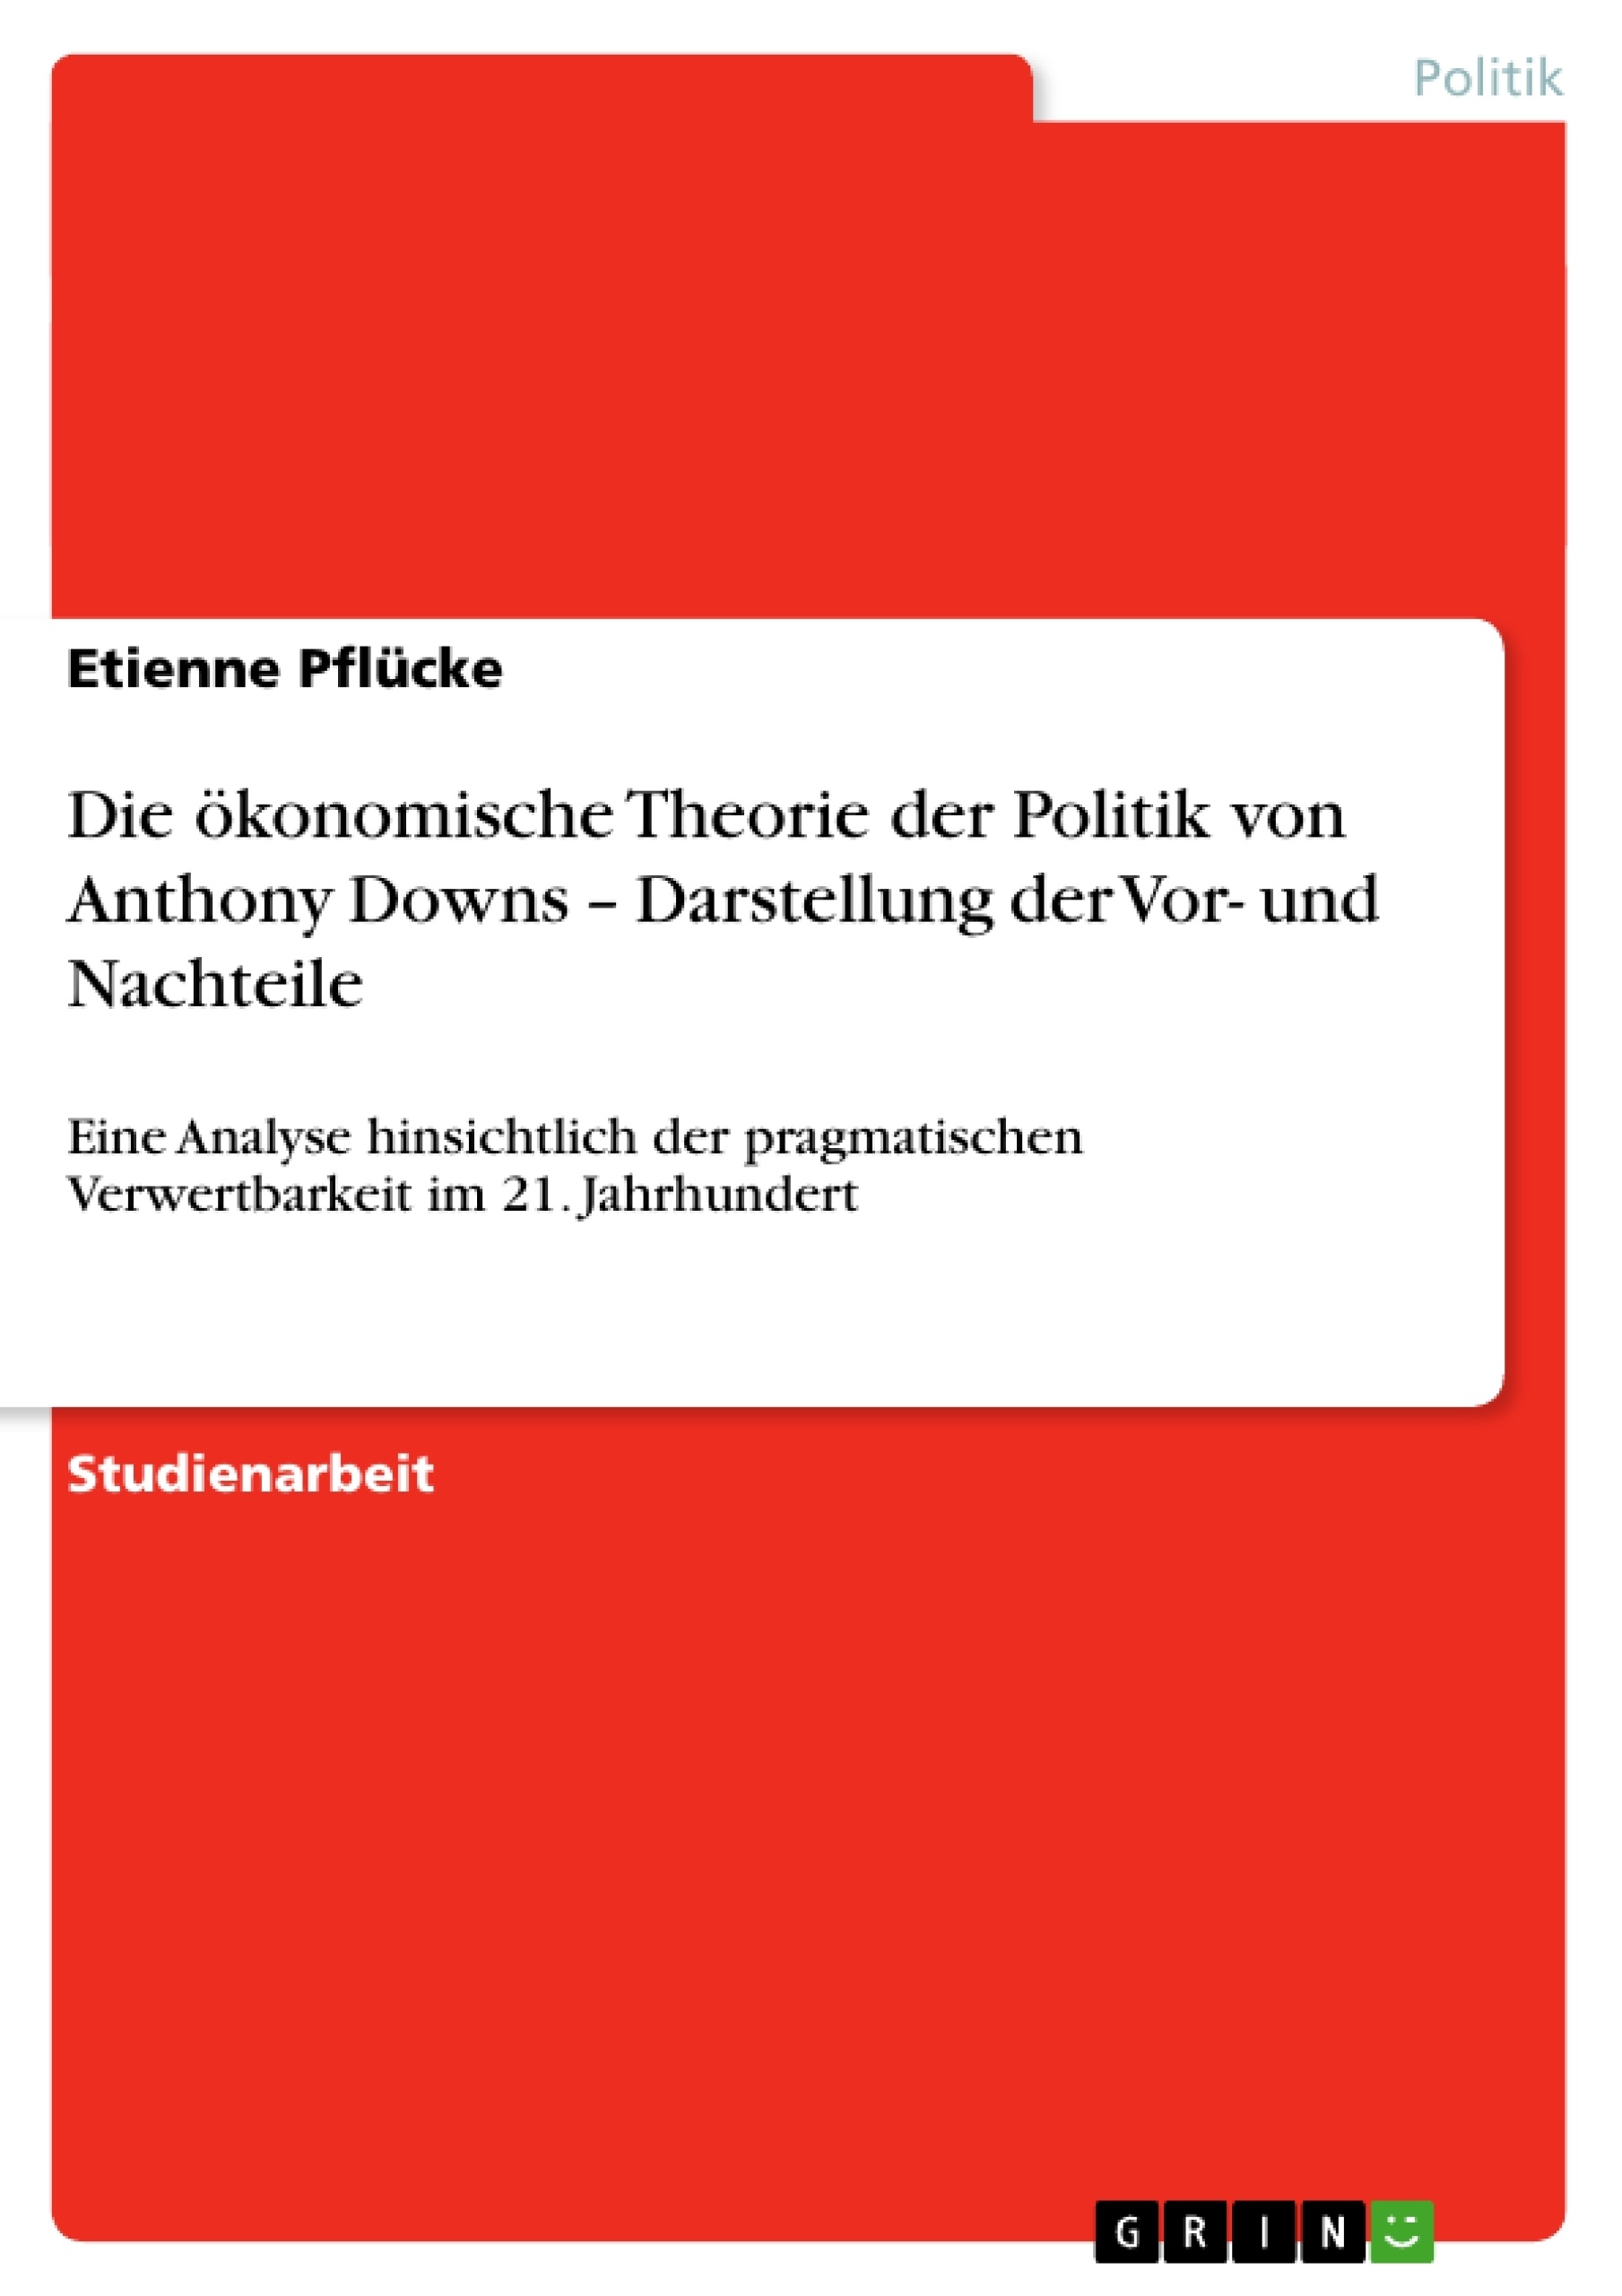 Title: Die ökonomische Theorie der Politik von Anthony Downs – Darstellung der Vor- und Nachteile